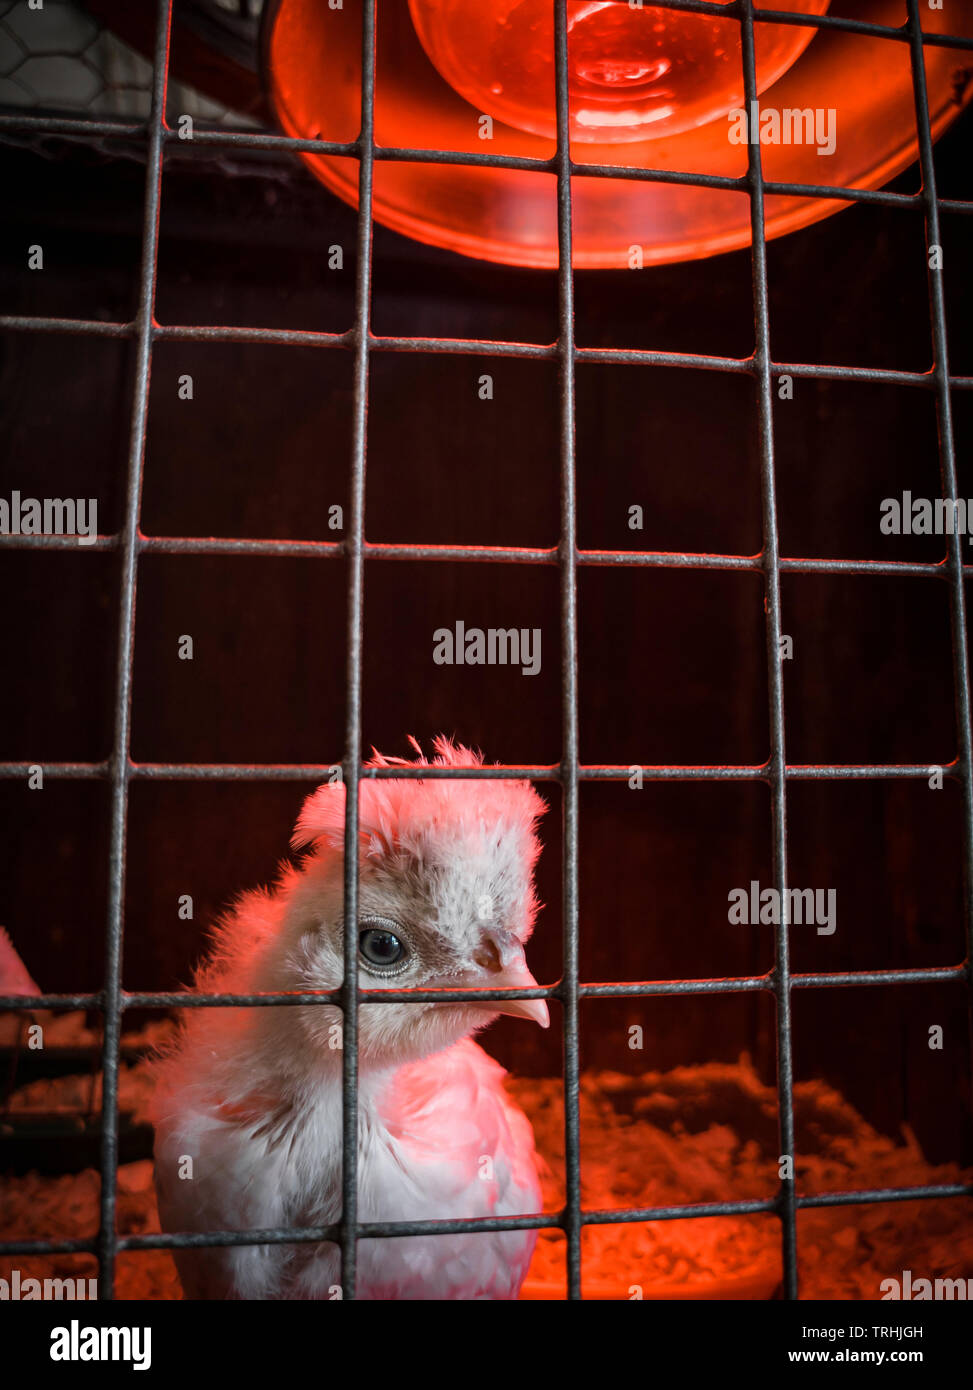 Jeune Chick sous une lampe de chauffage qui traverse les barres de sa cage. Sussex, Angleterre Royaume-Uni Banque D'Images